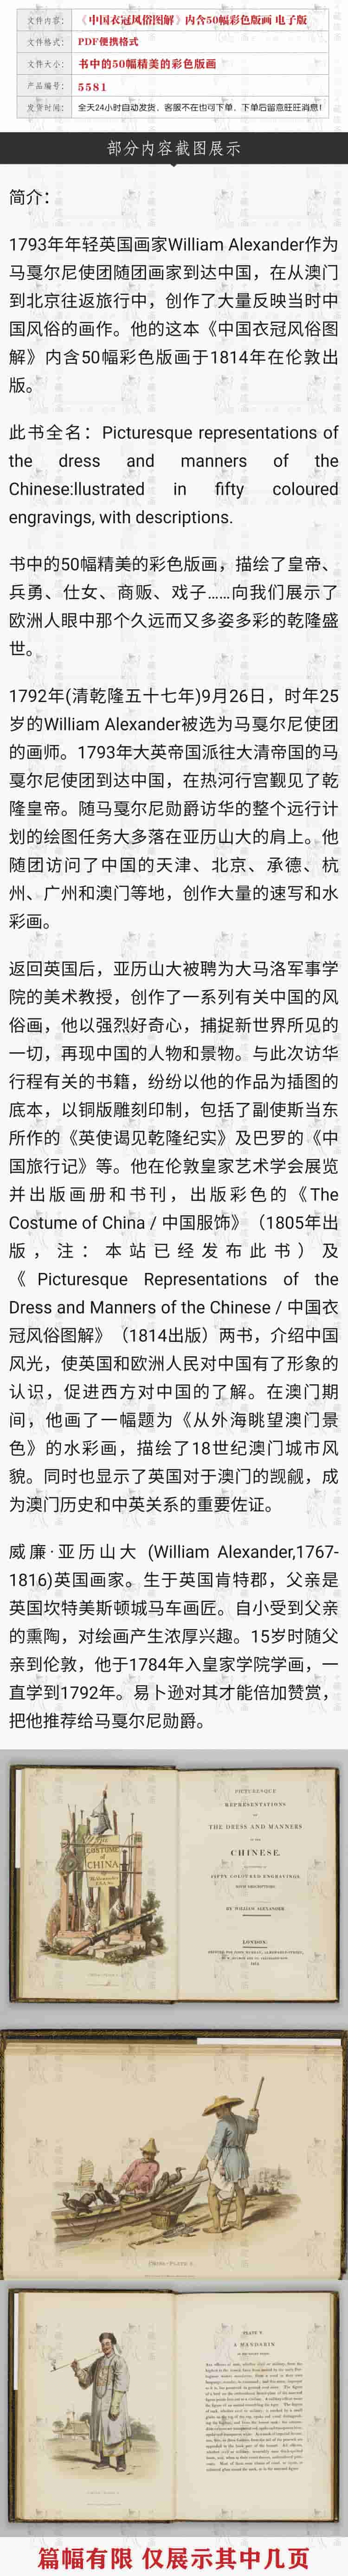 中国衣冠风俗图解古籍古本图谱画谱高清图库素材PDF电子版5581插图1